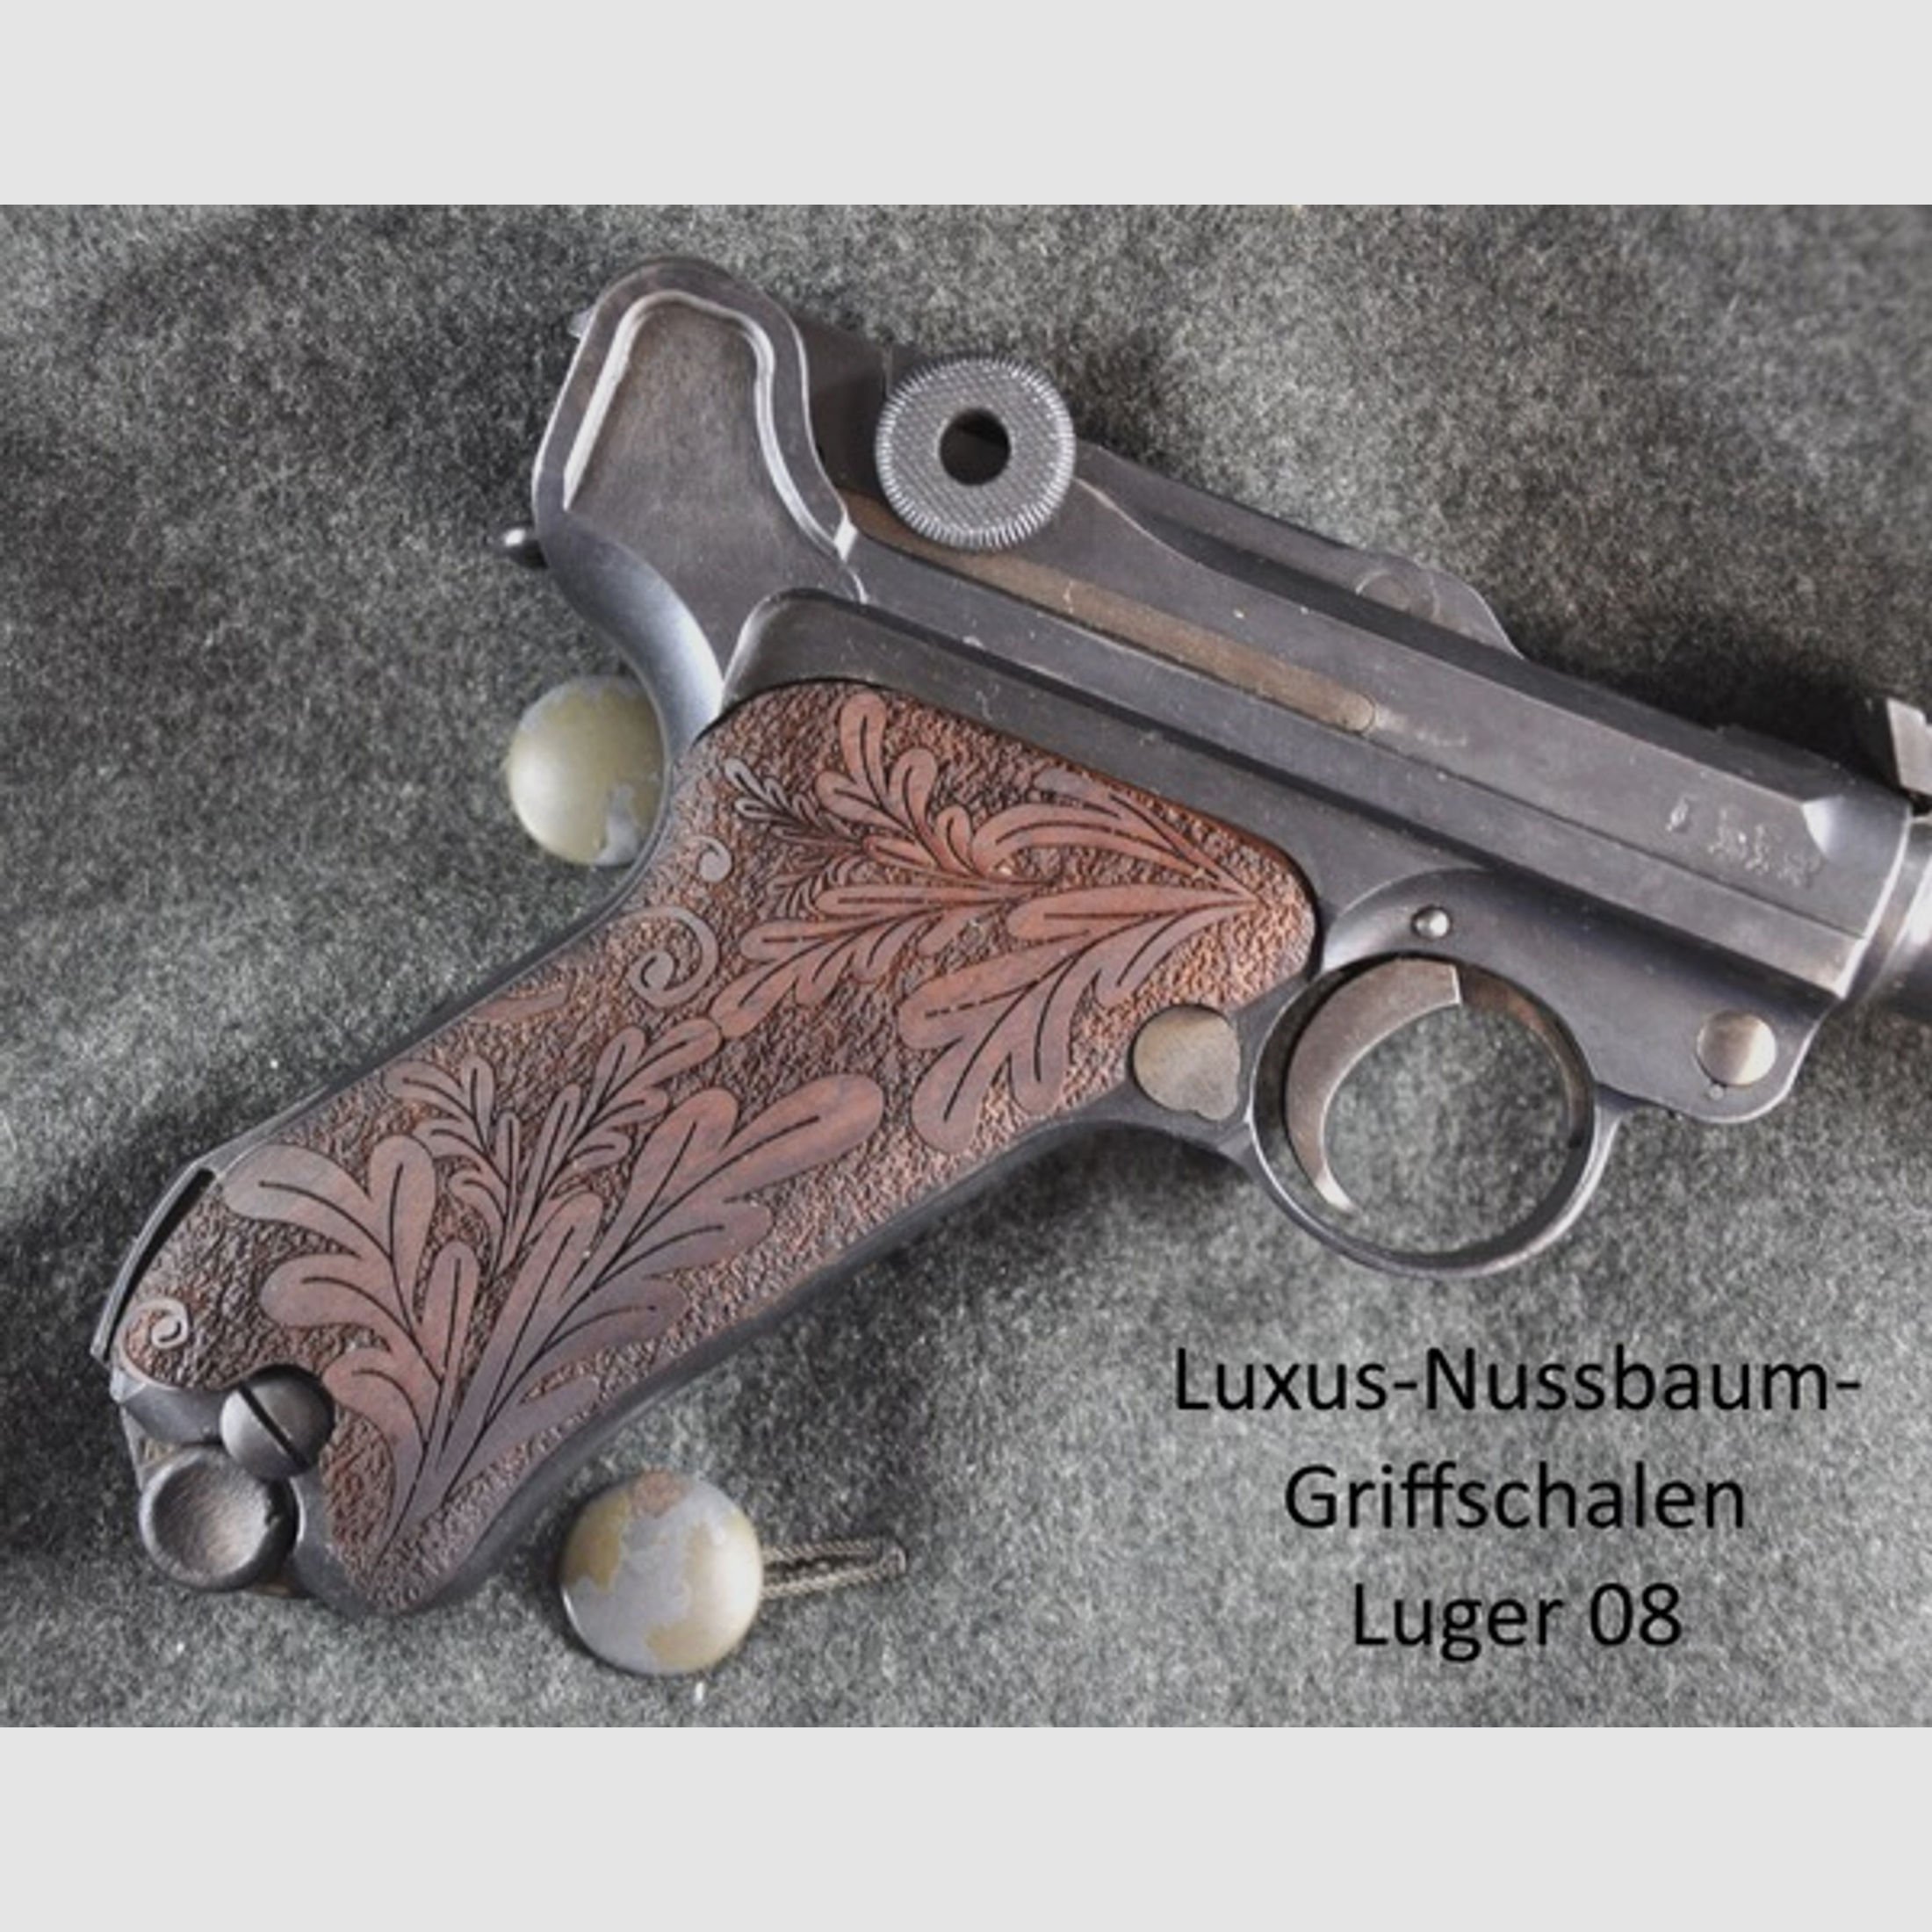 Nussbaum-Luxus-Griffschalen für Pistole Luger 08 mit Rankenverschneidung